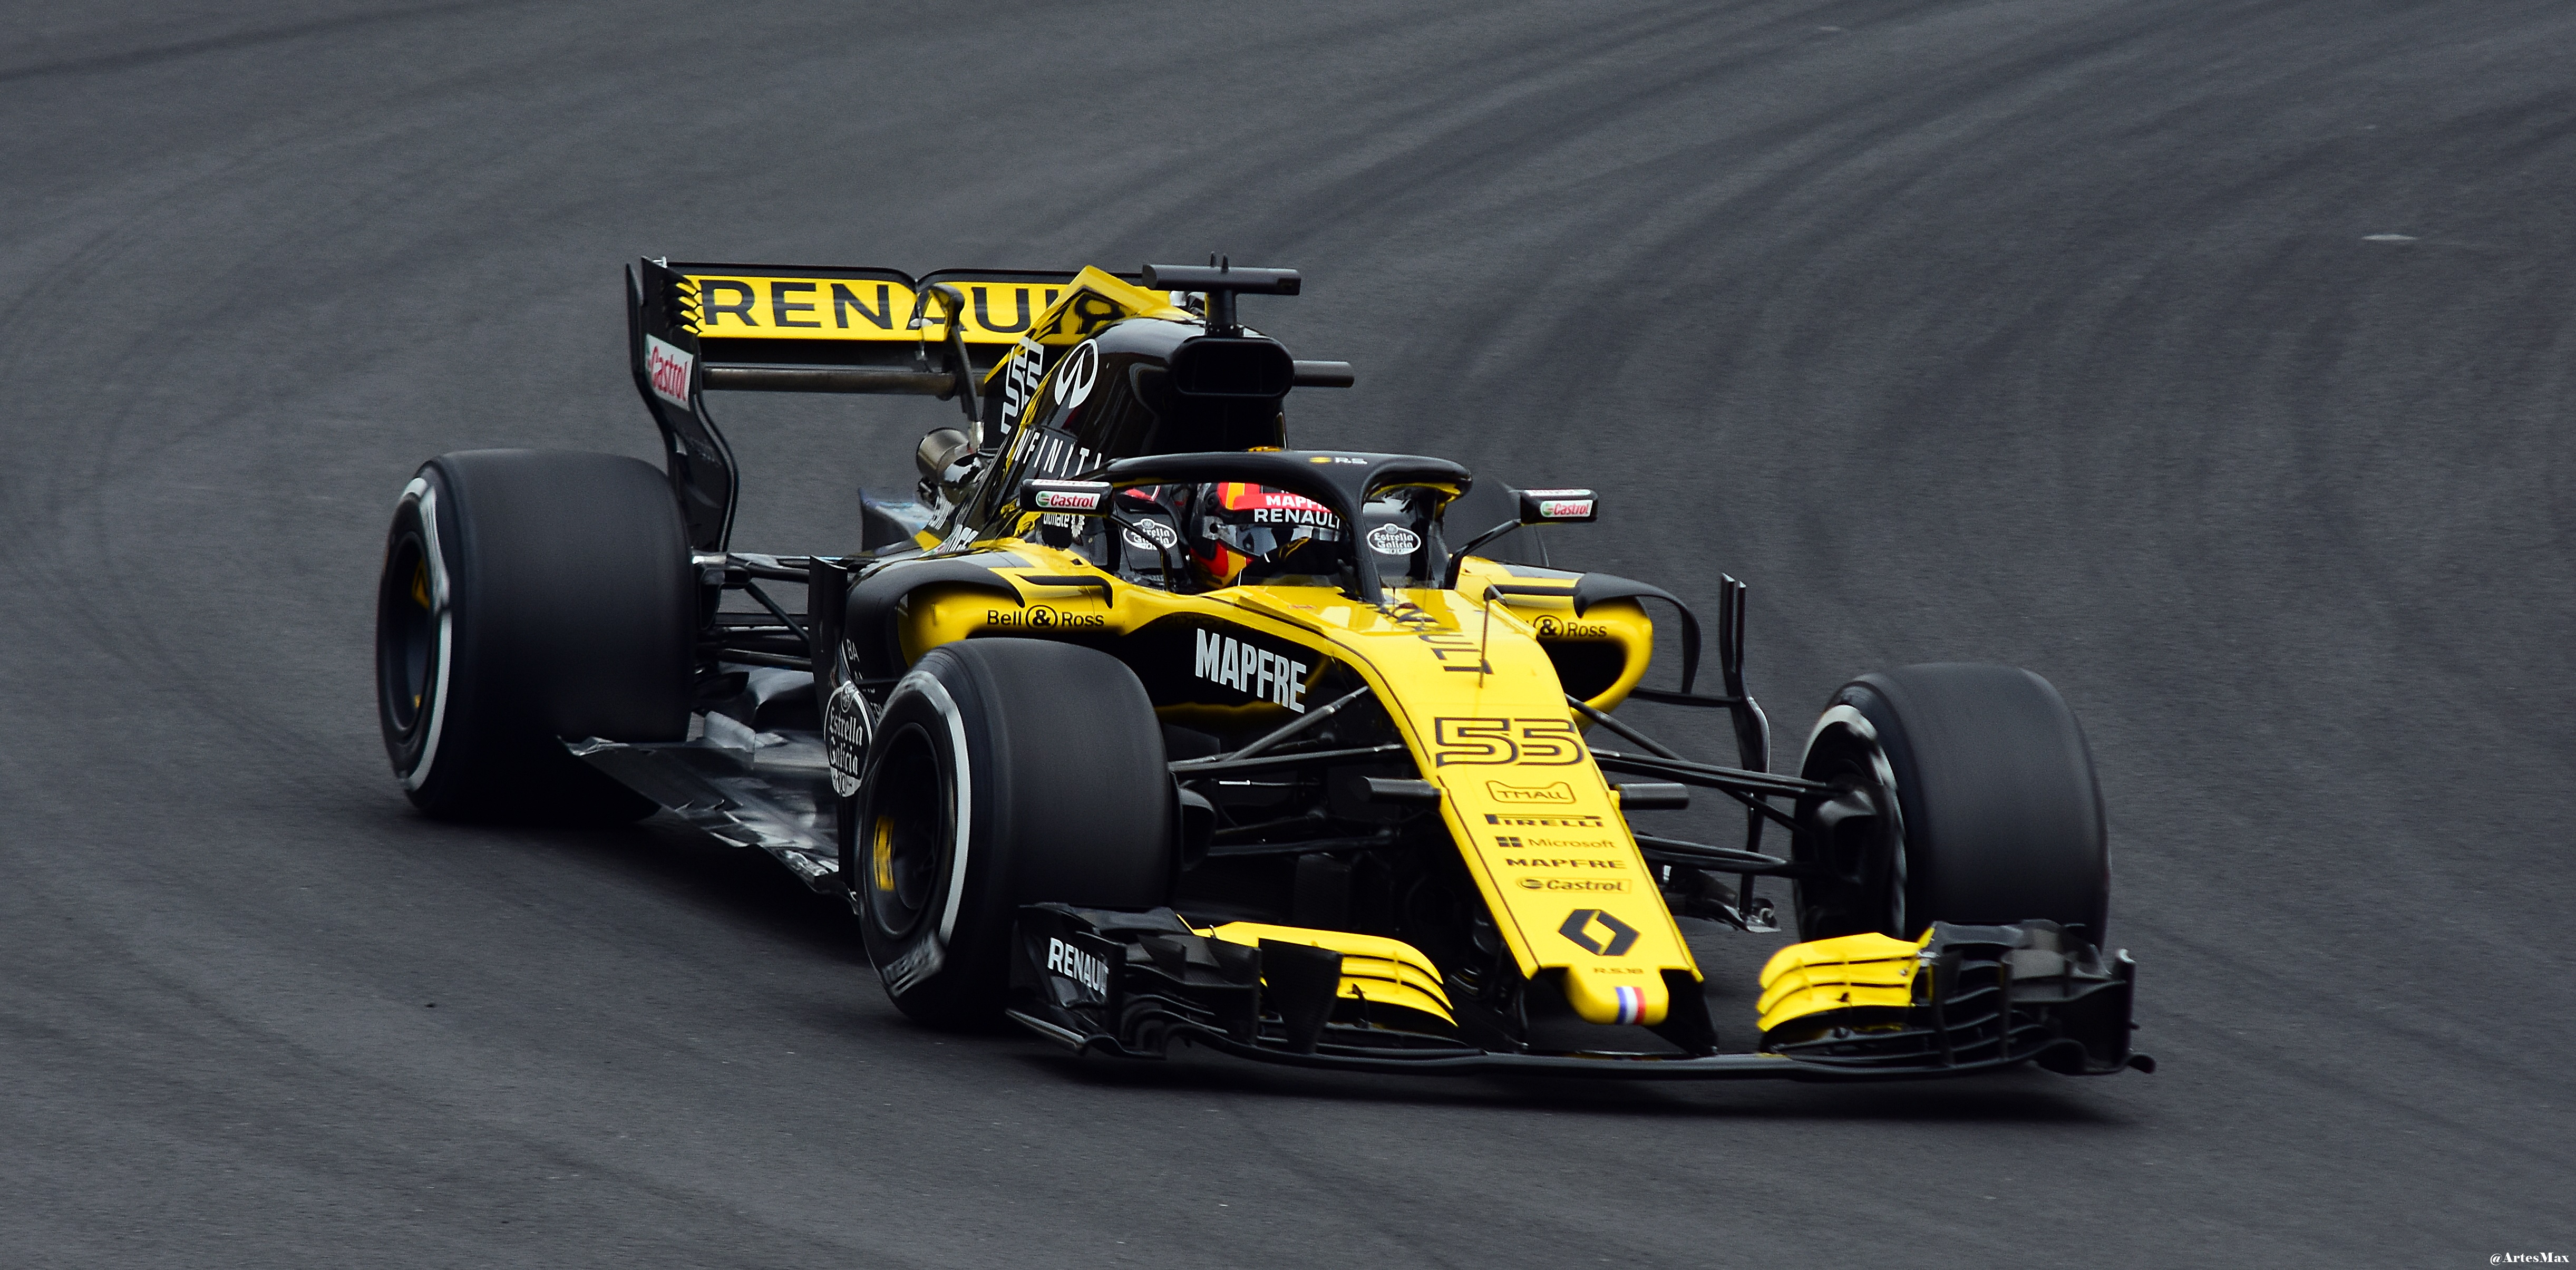 Renault Formule 1 1/18 